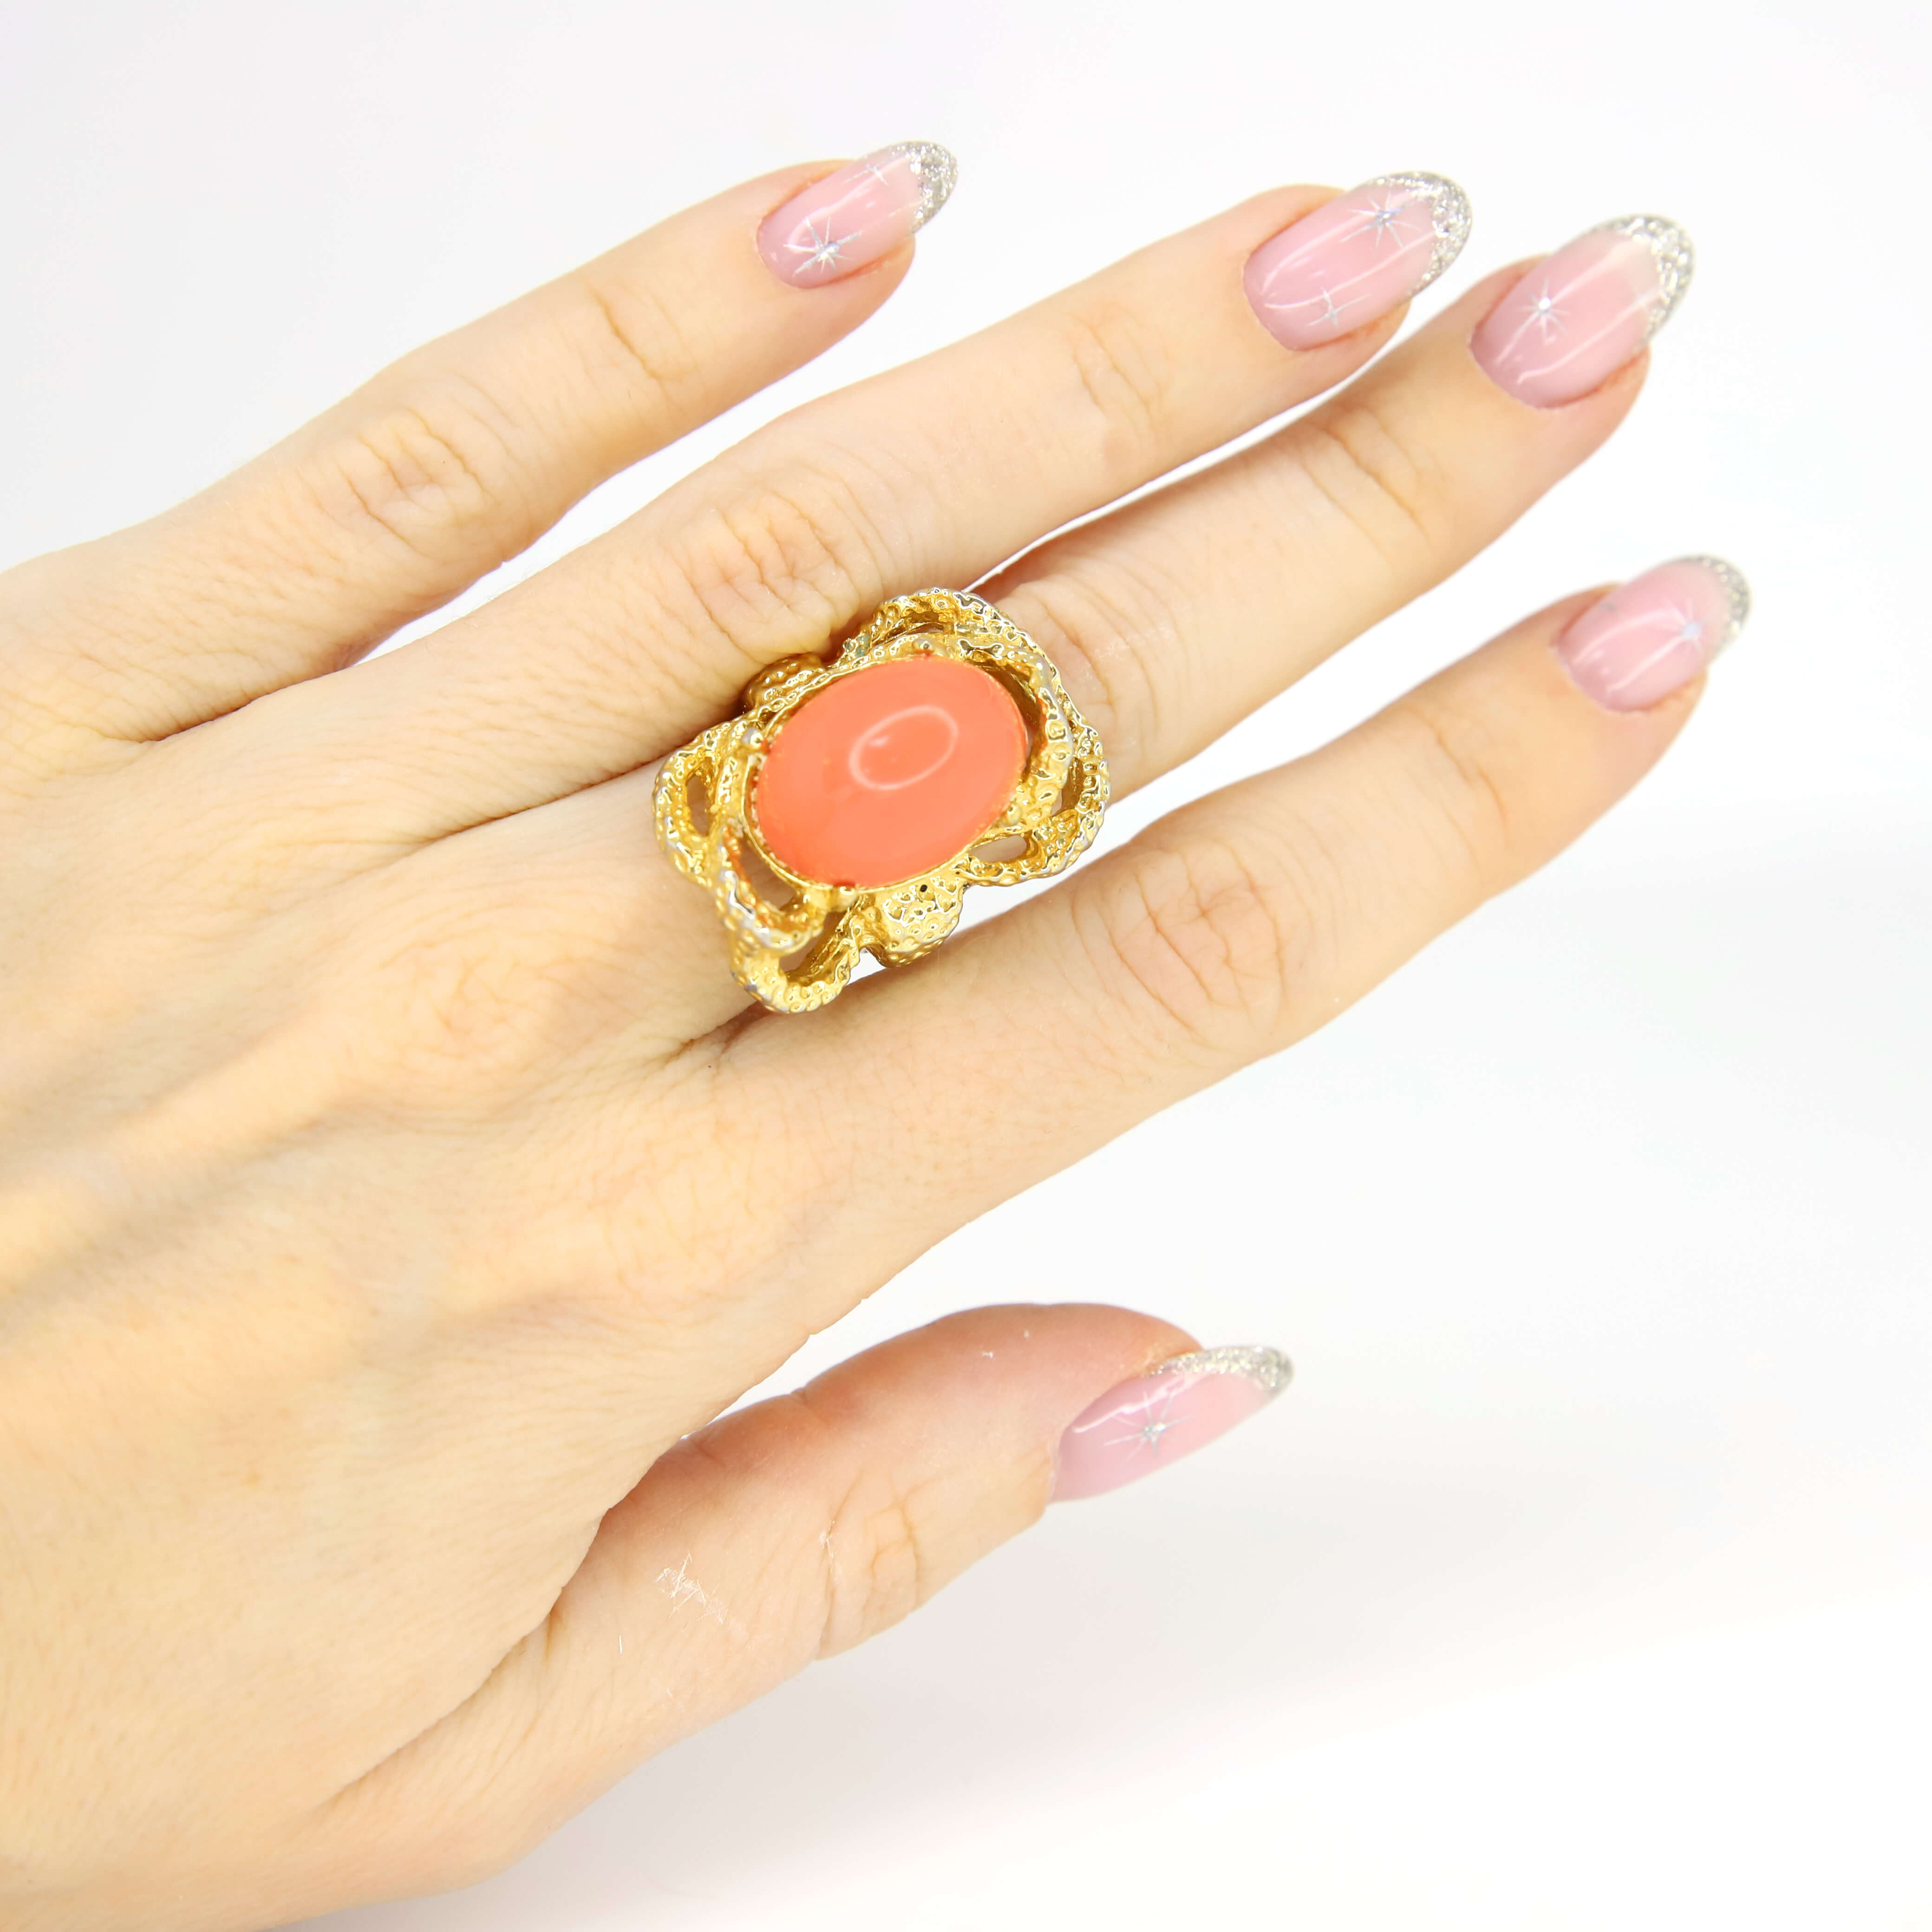 Винтажное кольцо Vogue размер 15,5-17,5, цвет Оранжевый, фото 1